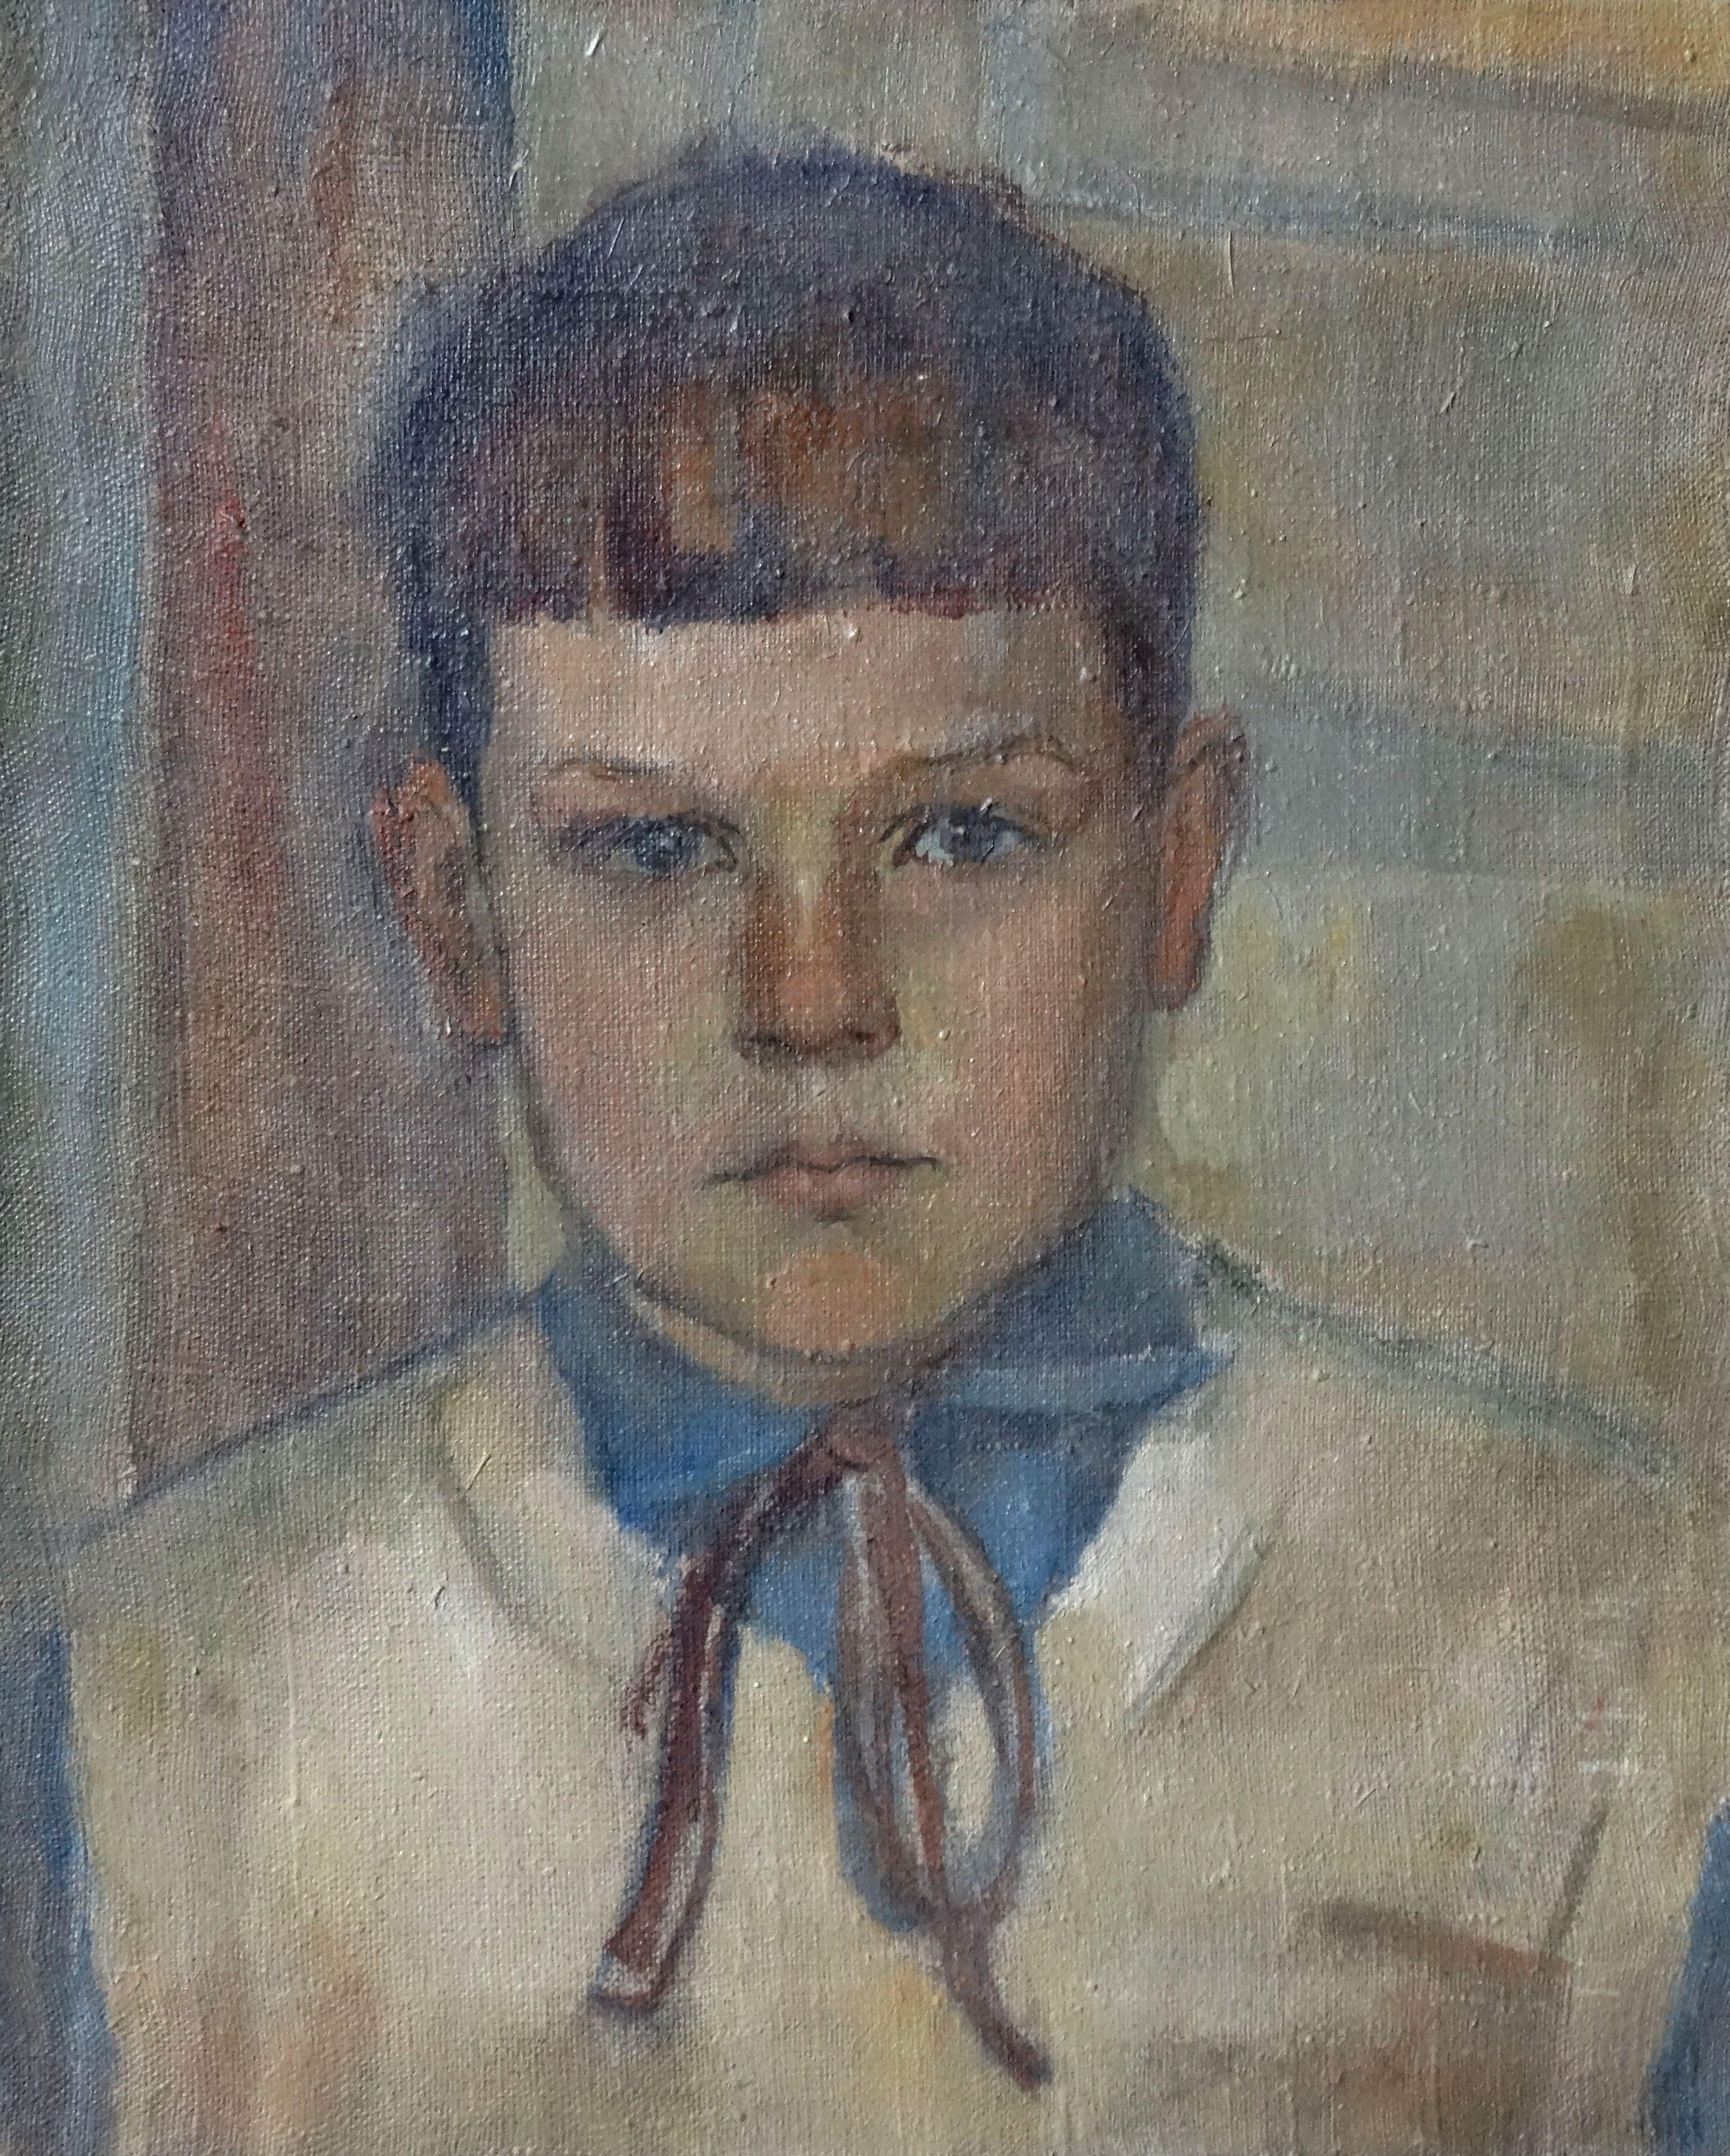 Biruta Baumane Portrait Painting - The boy's portrait. Ivar. 1950s, oil on canvas, 50x40 cm